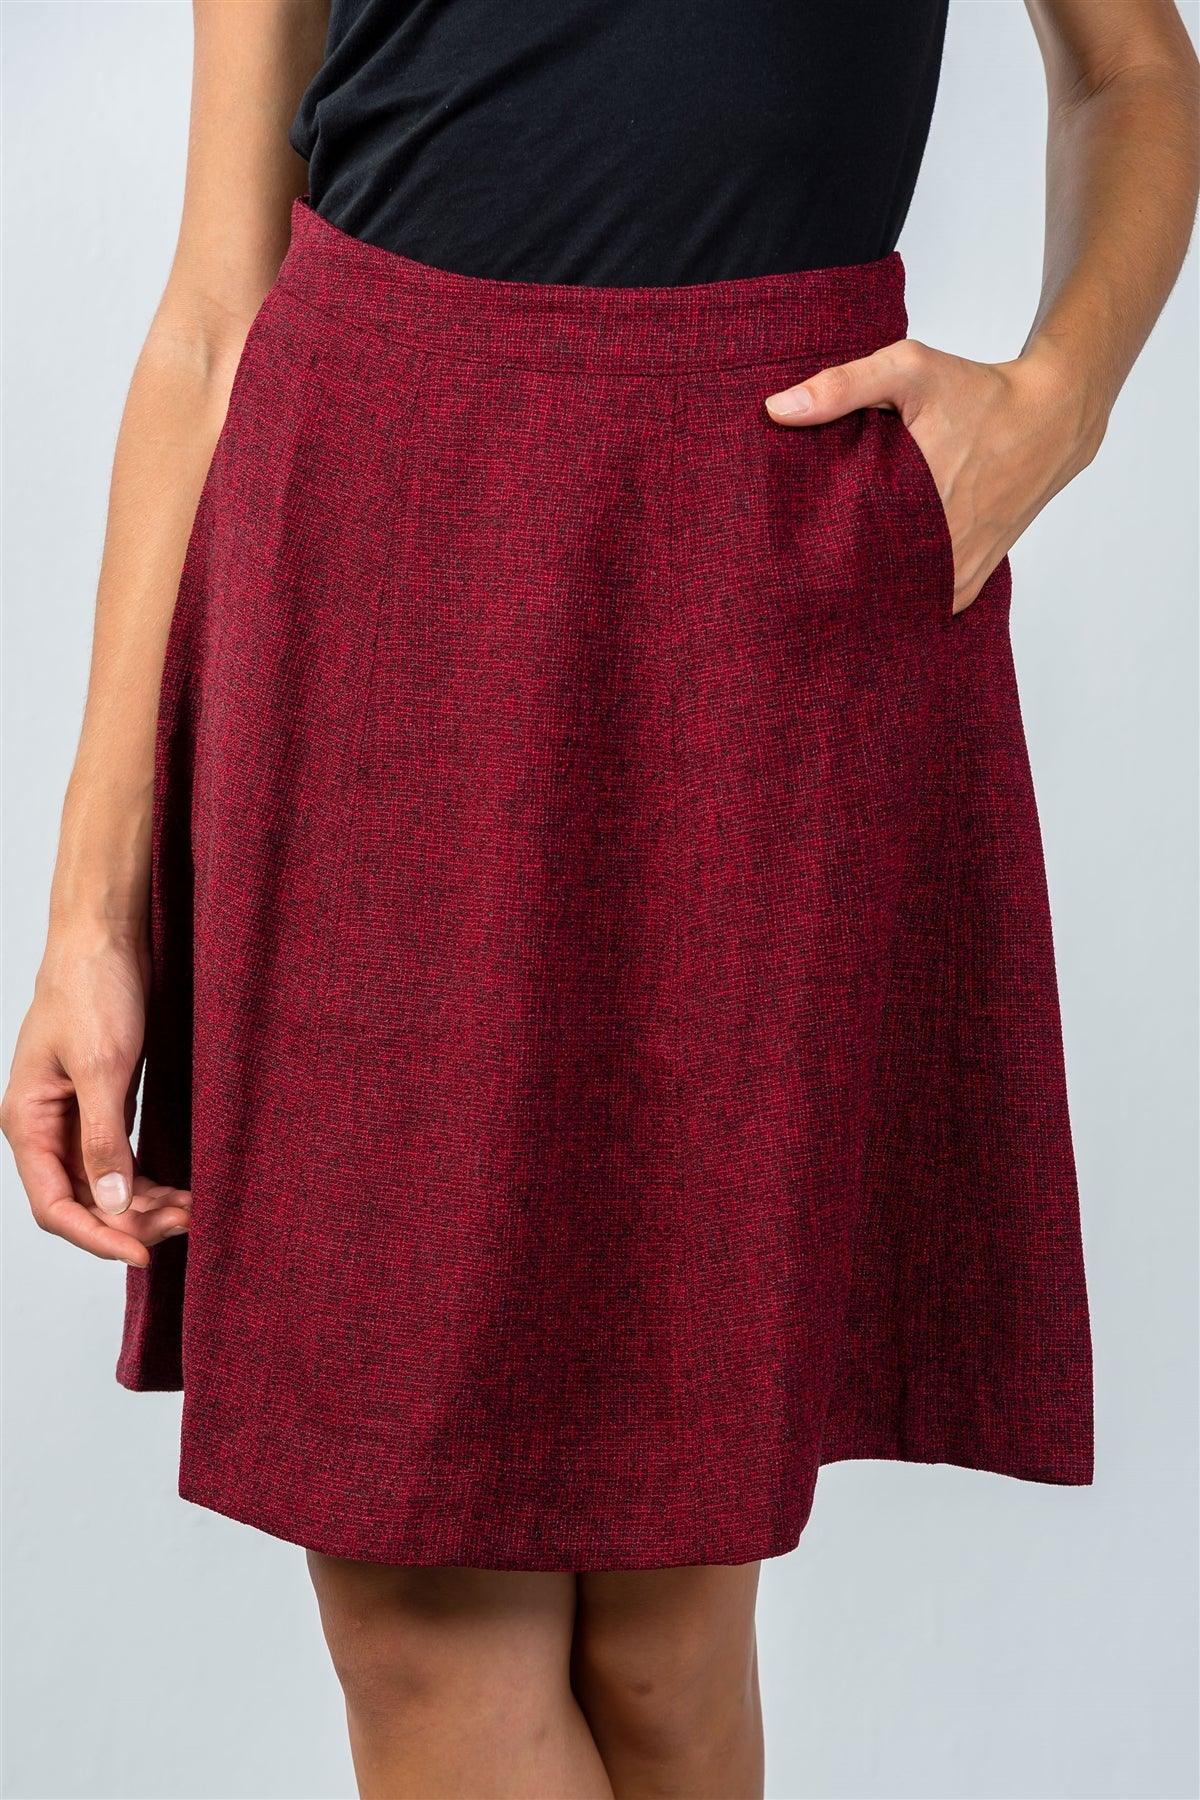 Burgundy Knit Knee-Length Skirt / 2-2-2